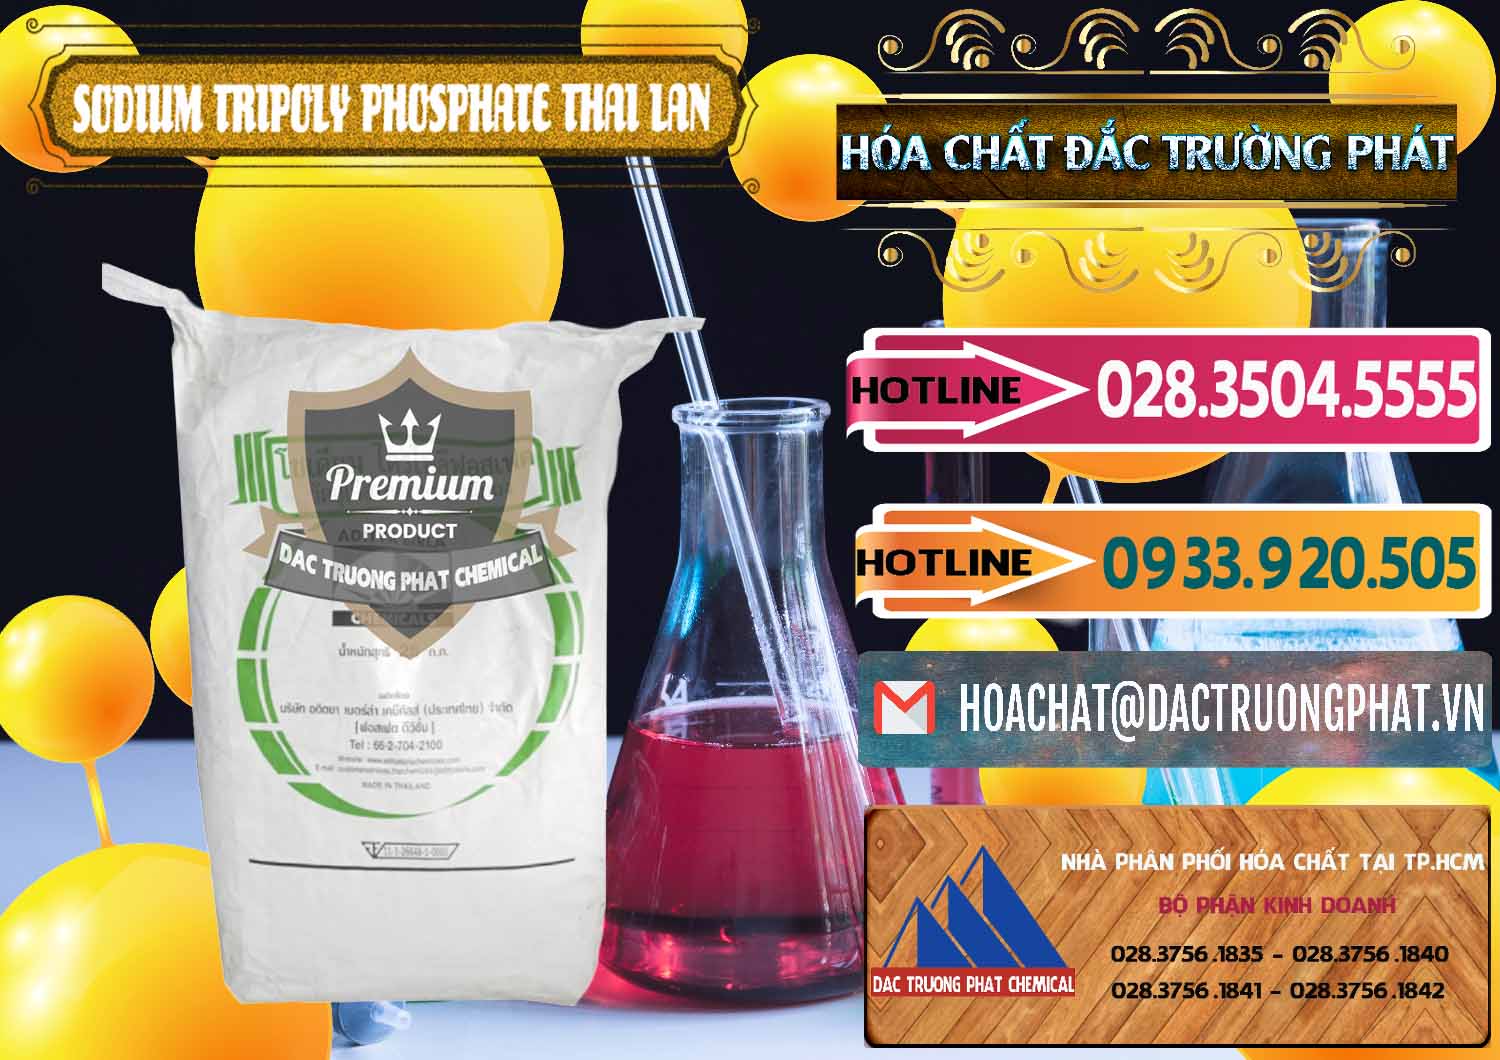 Cty bán _ cung ứng Sodium Tripoly Phosphate - STPP Aditya Birla Grasim Thái Lan Thailand - 0421 - Cty nhập khẩu & cung cấp hóa chất tại TP.HCM - dactruongphat.vn